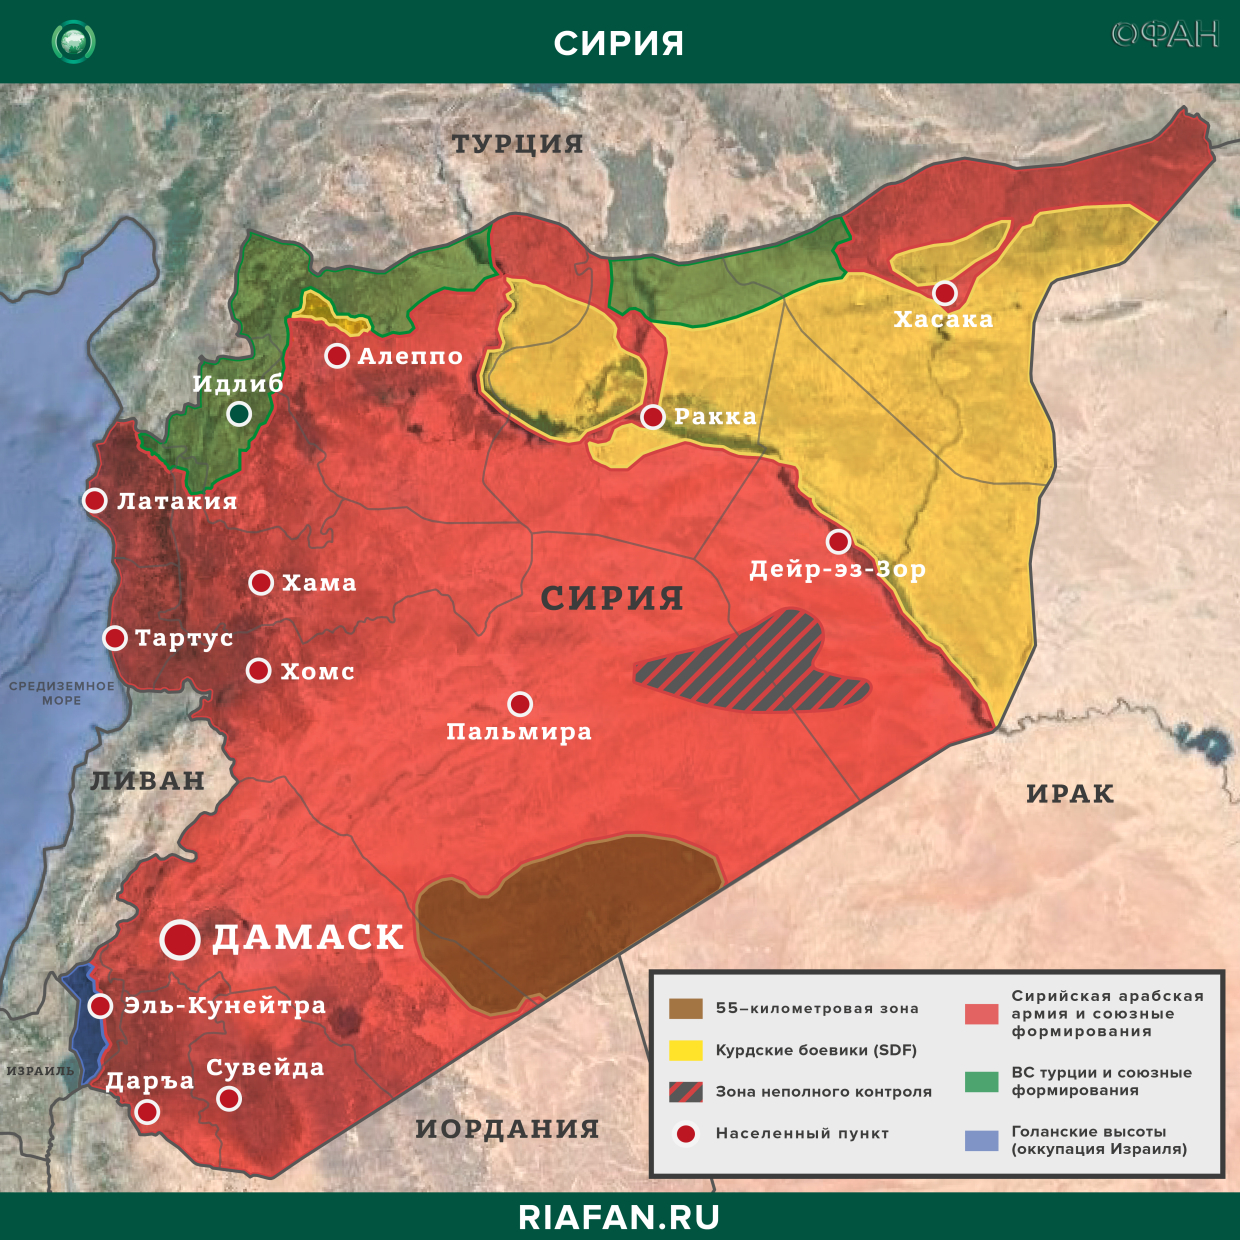 叙利亚新闻 31 八月 16.30: 土耳其武装部队开始在伊德利卜建设新检查站